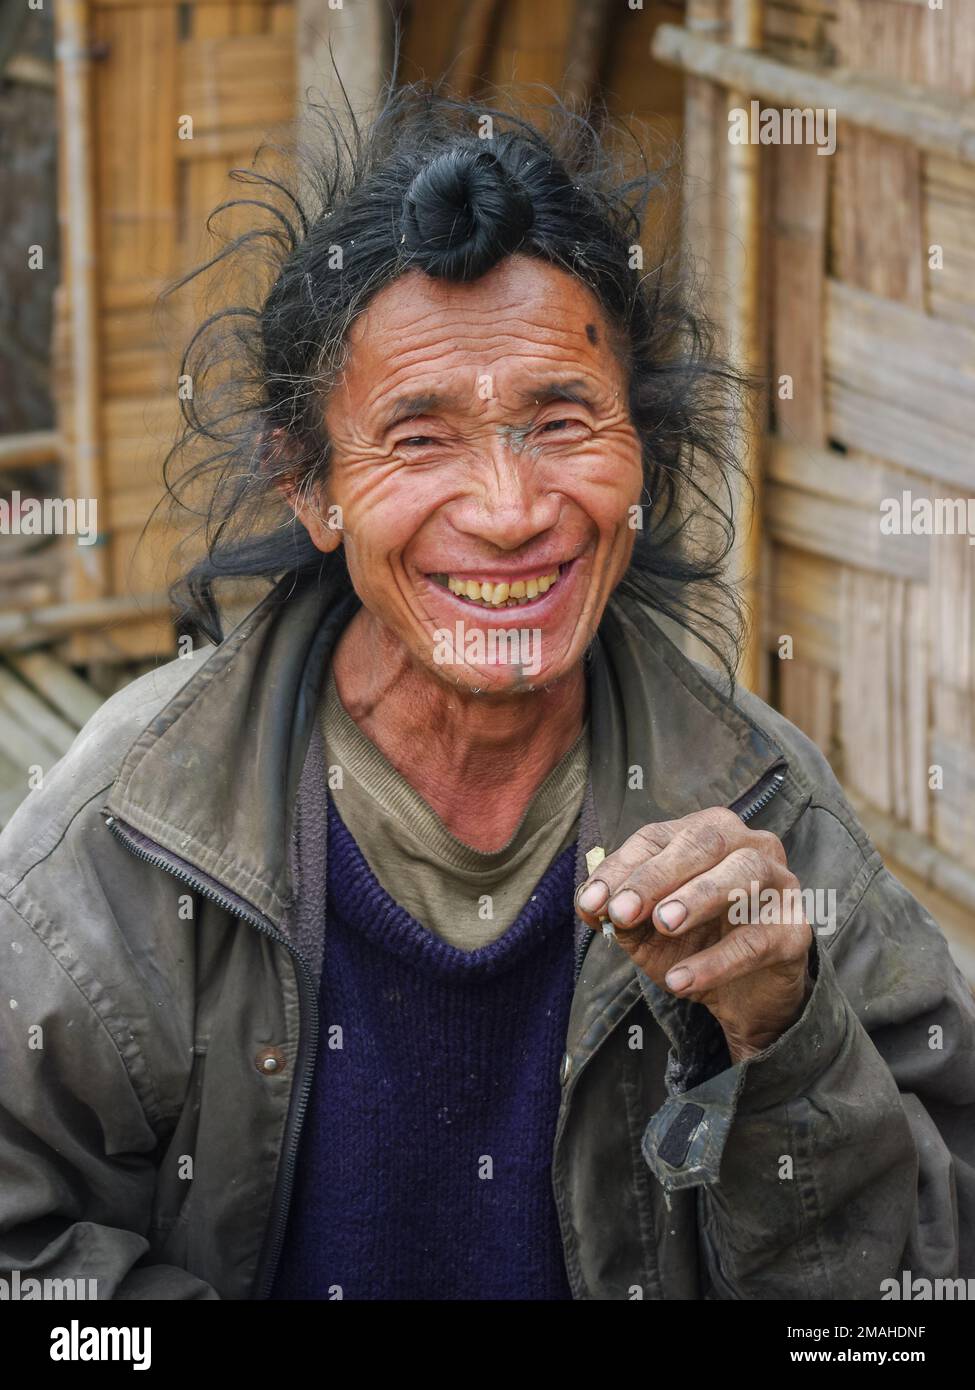 Ziro, Arunachal Pradesh, Inde - 02 24 2009 : Portrait d'un homme tribal Apatani souriant avec un pain et un tatouage au menton traditionnels Banque D'Images